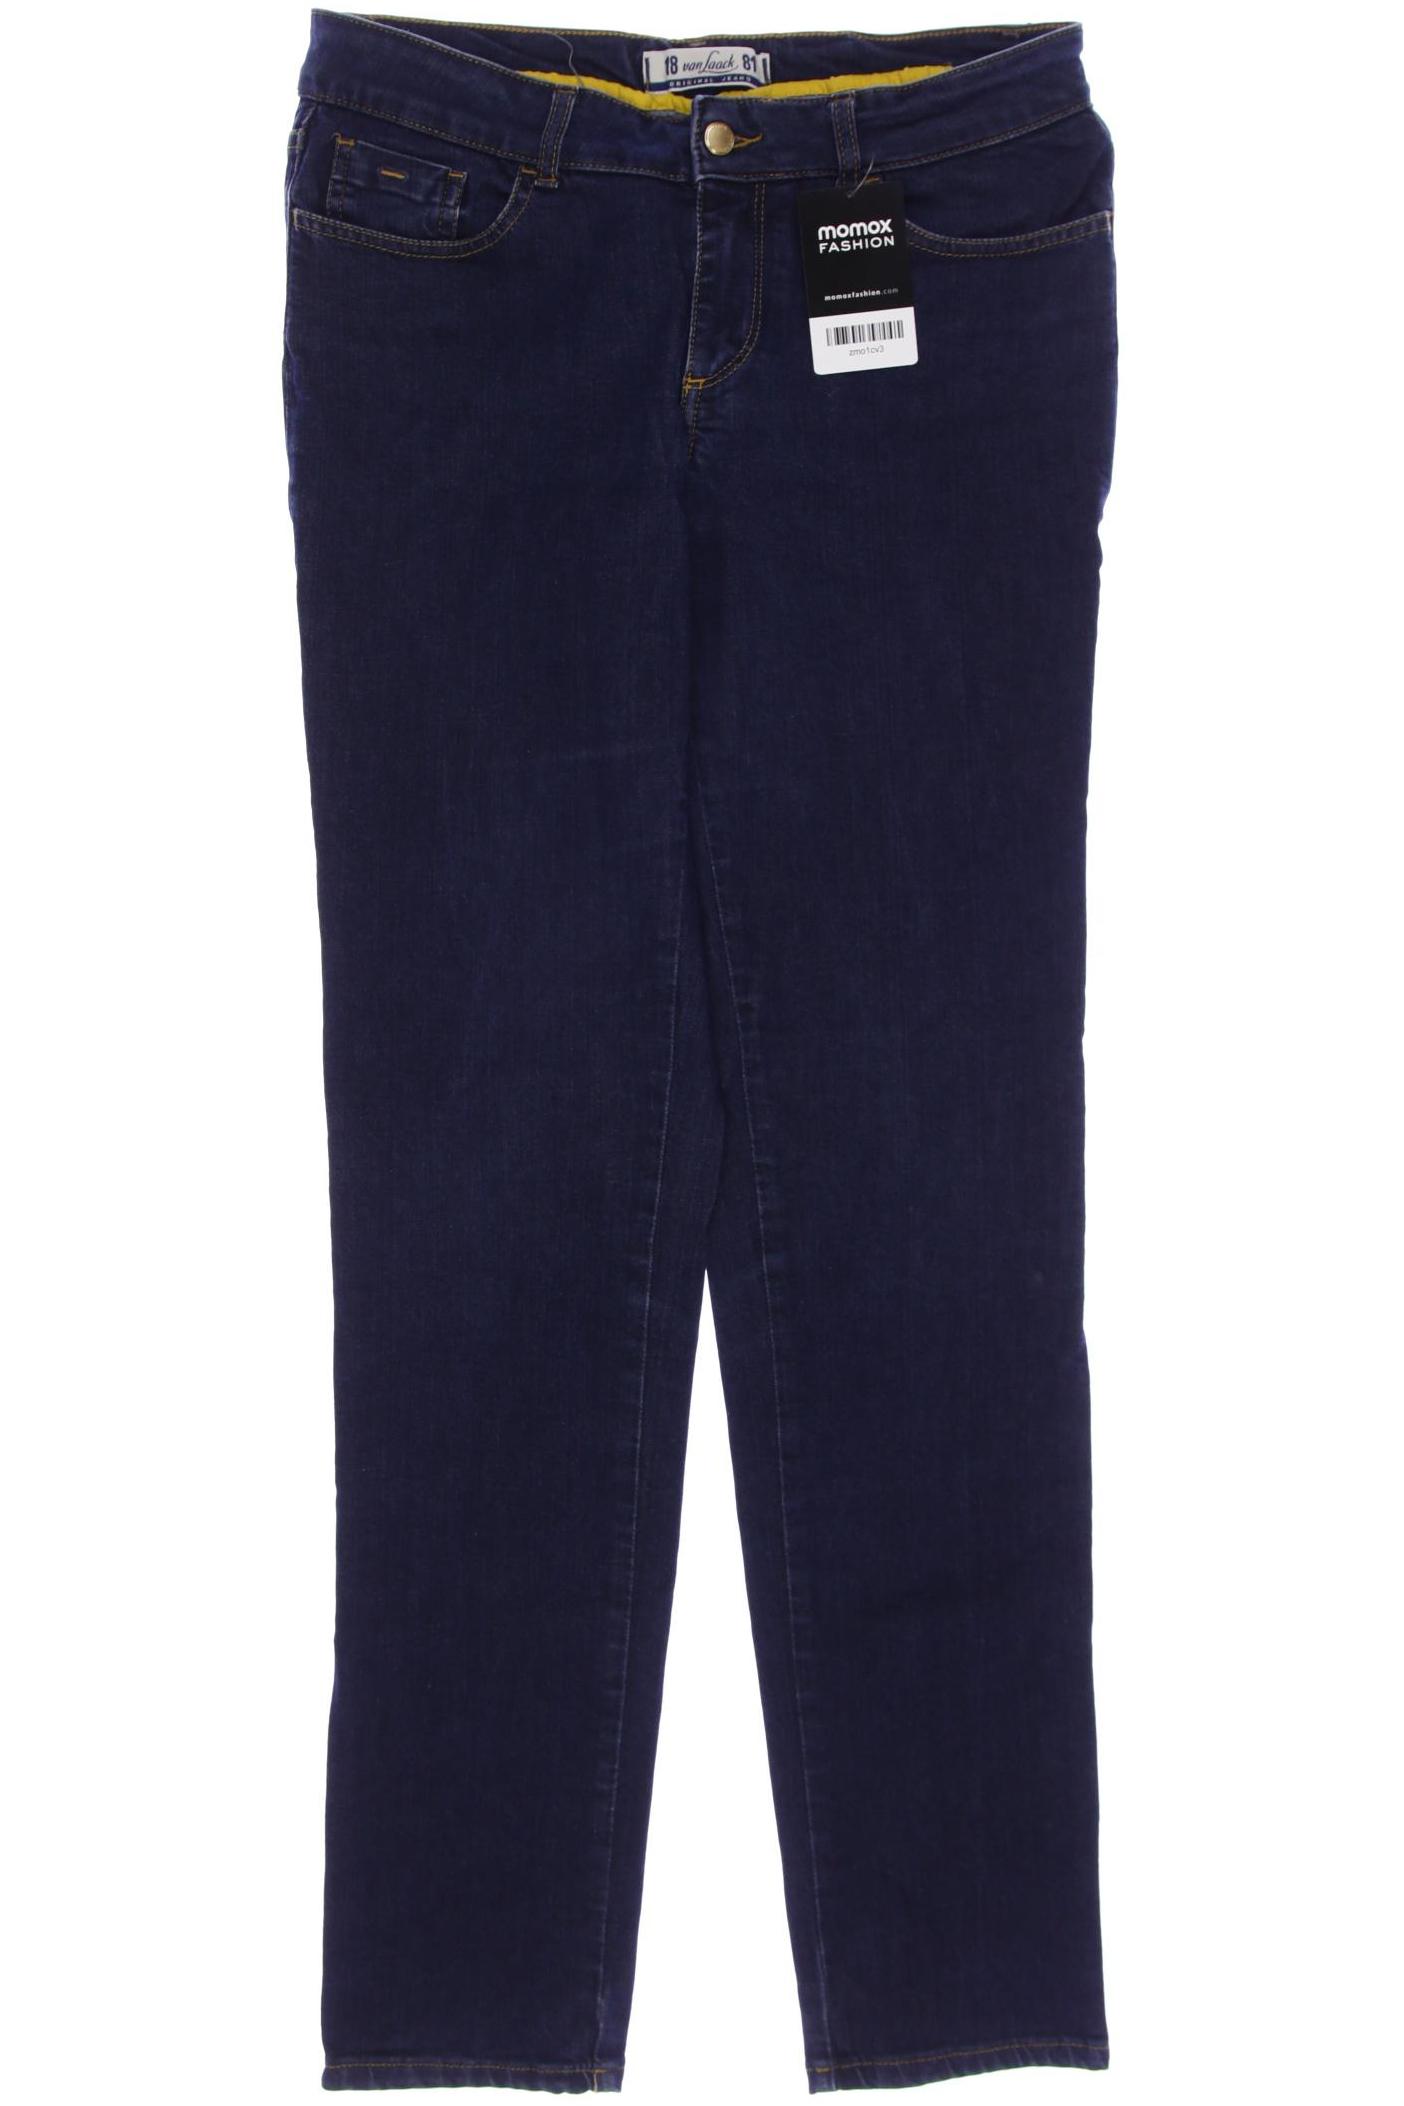 Van Laack Damen Jeans, marineblau, Gr. 40 von van Laack